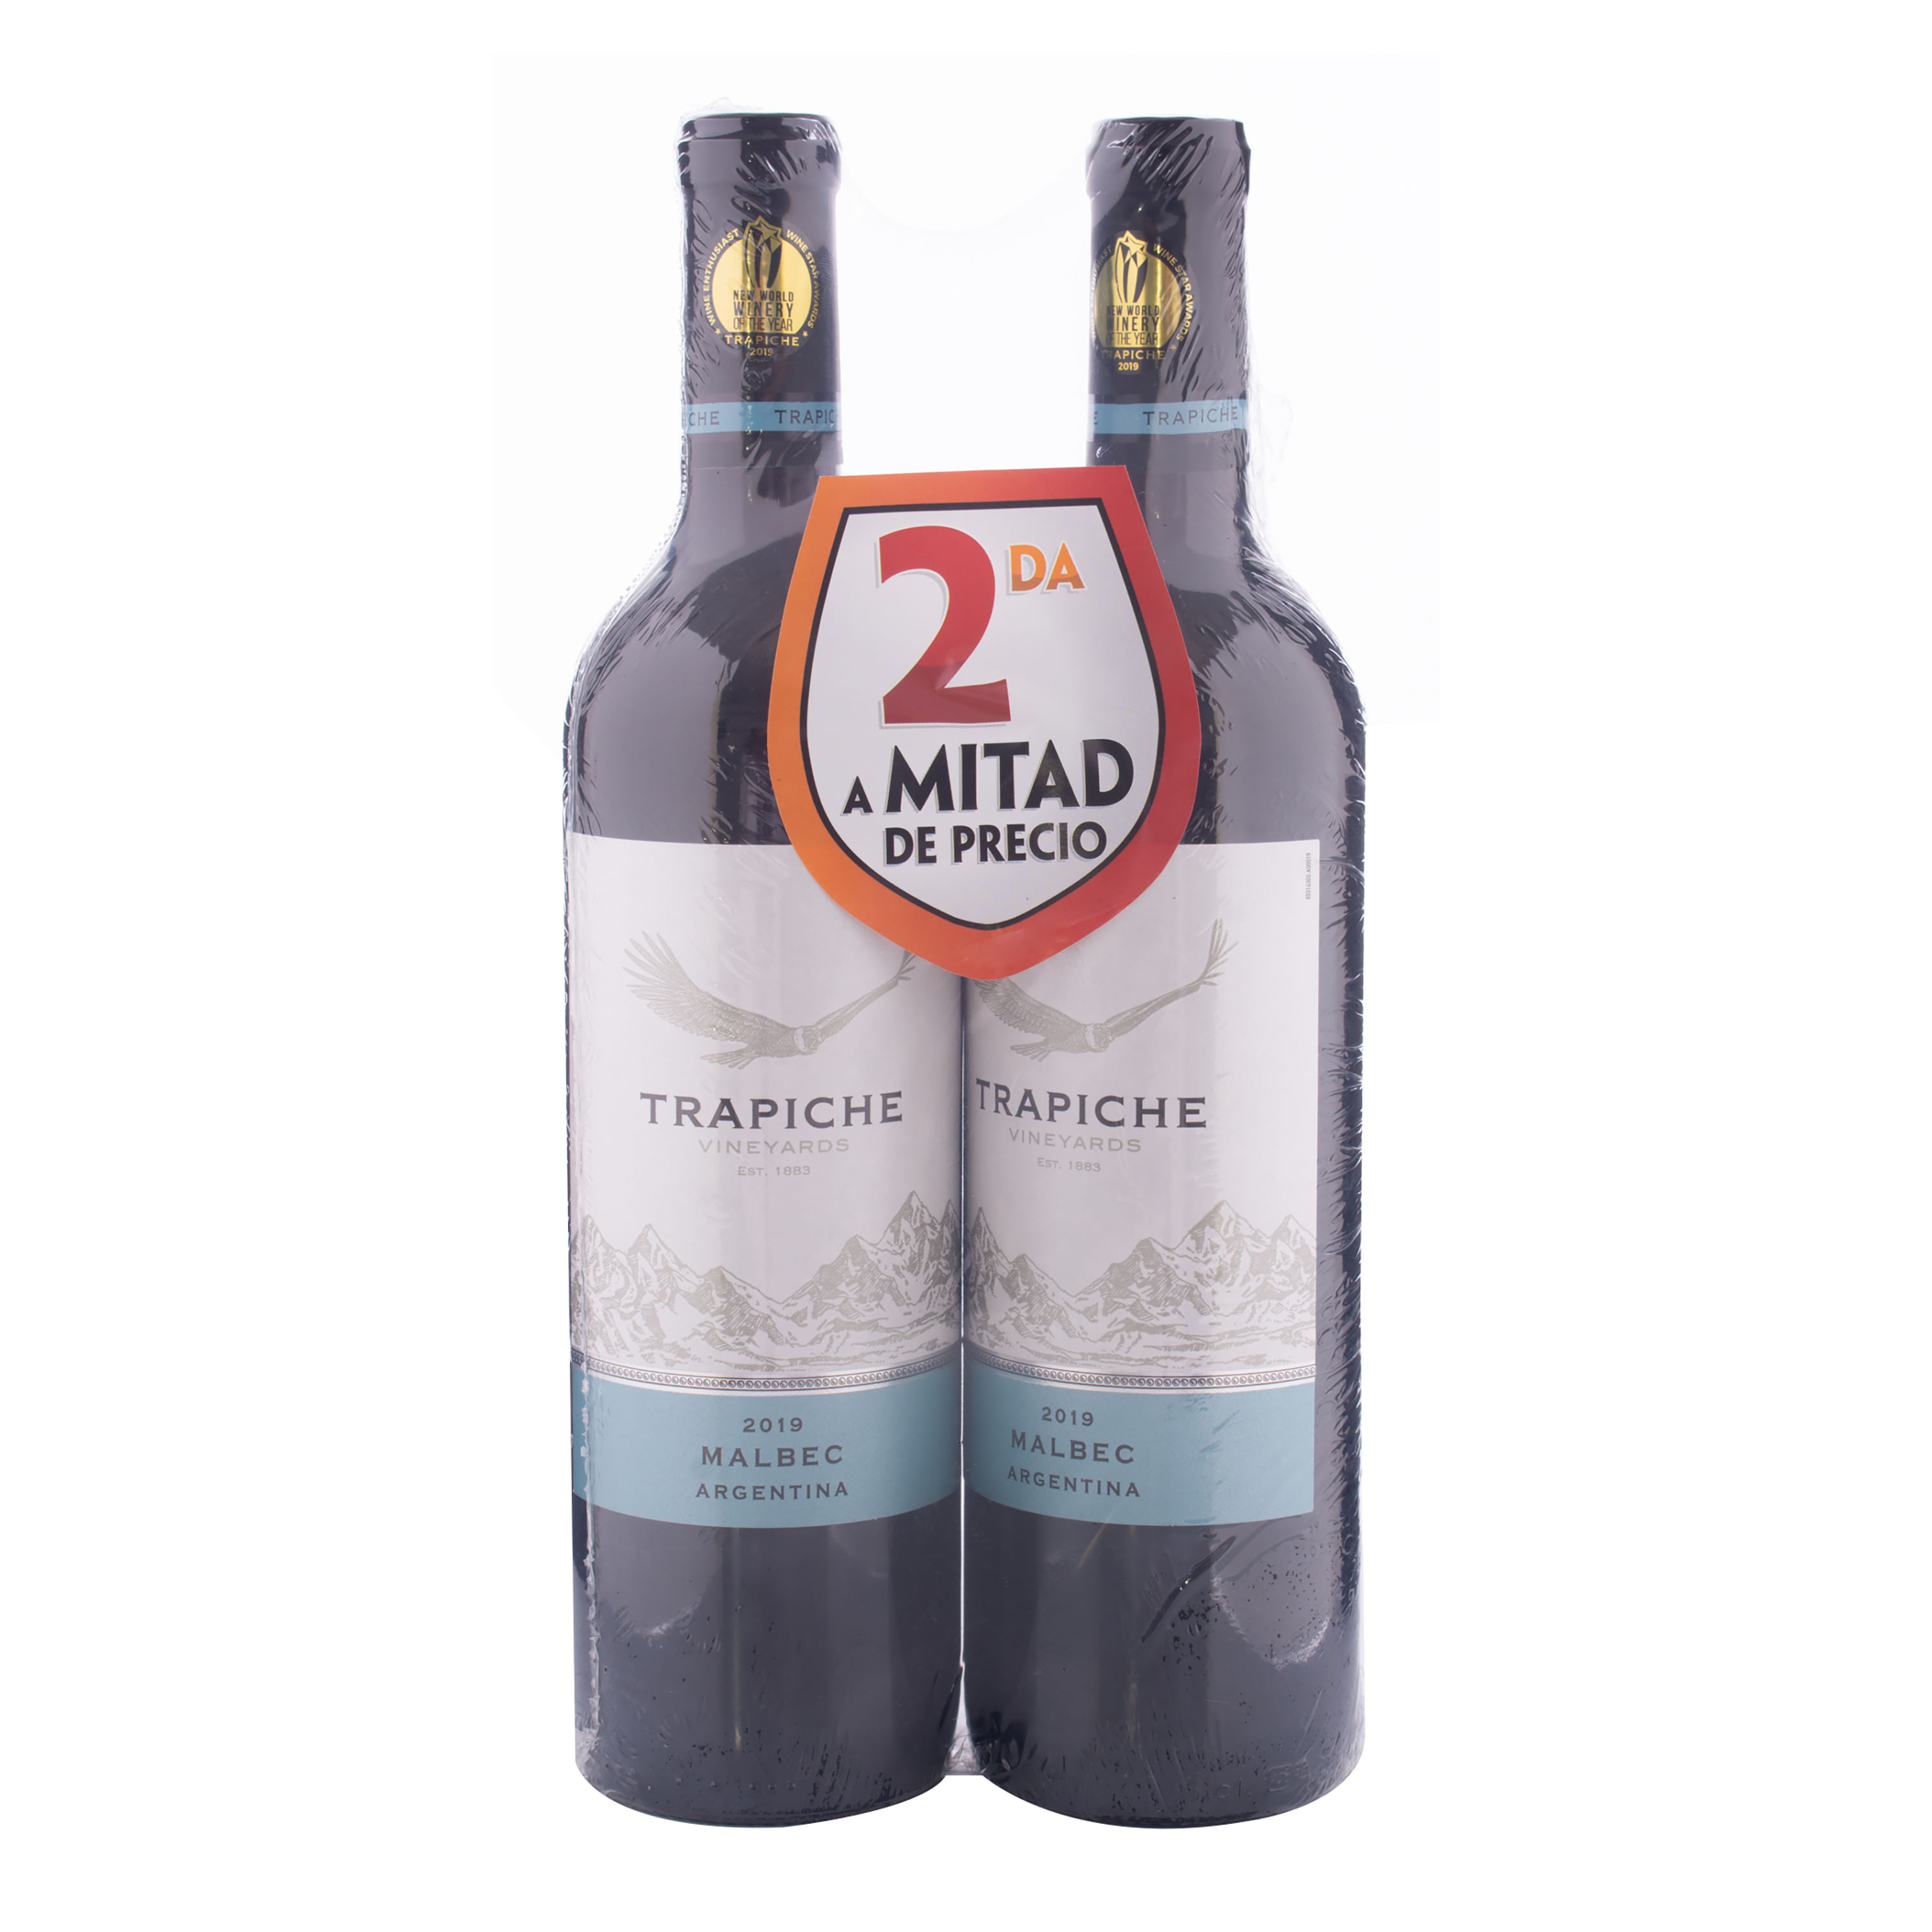 Vino-Trapiche-Malbec-2Mit-Pre-2P-1500Ml-1-65954